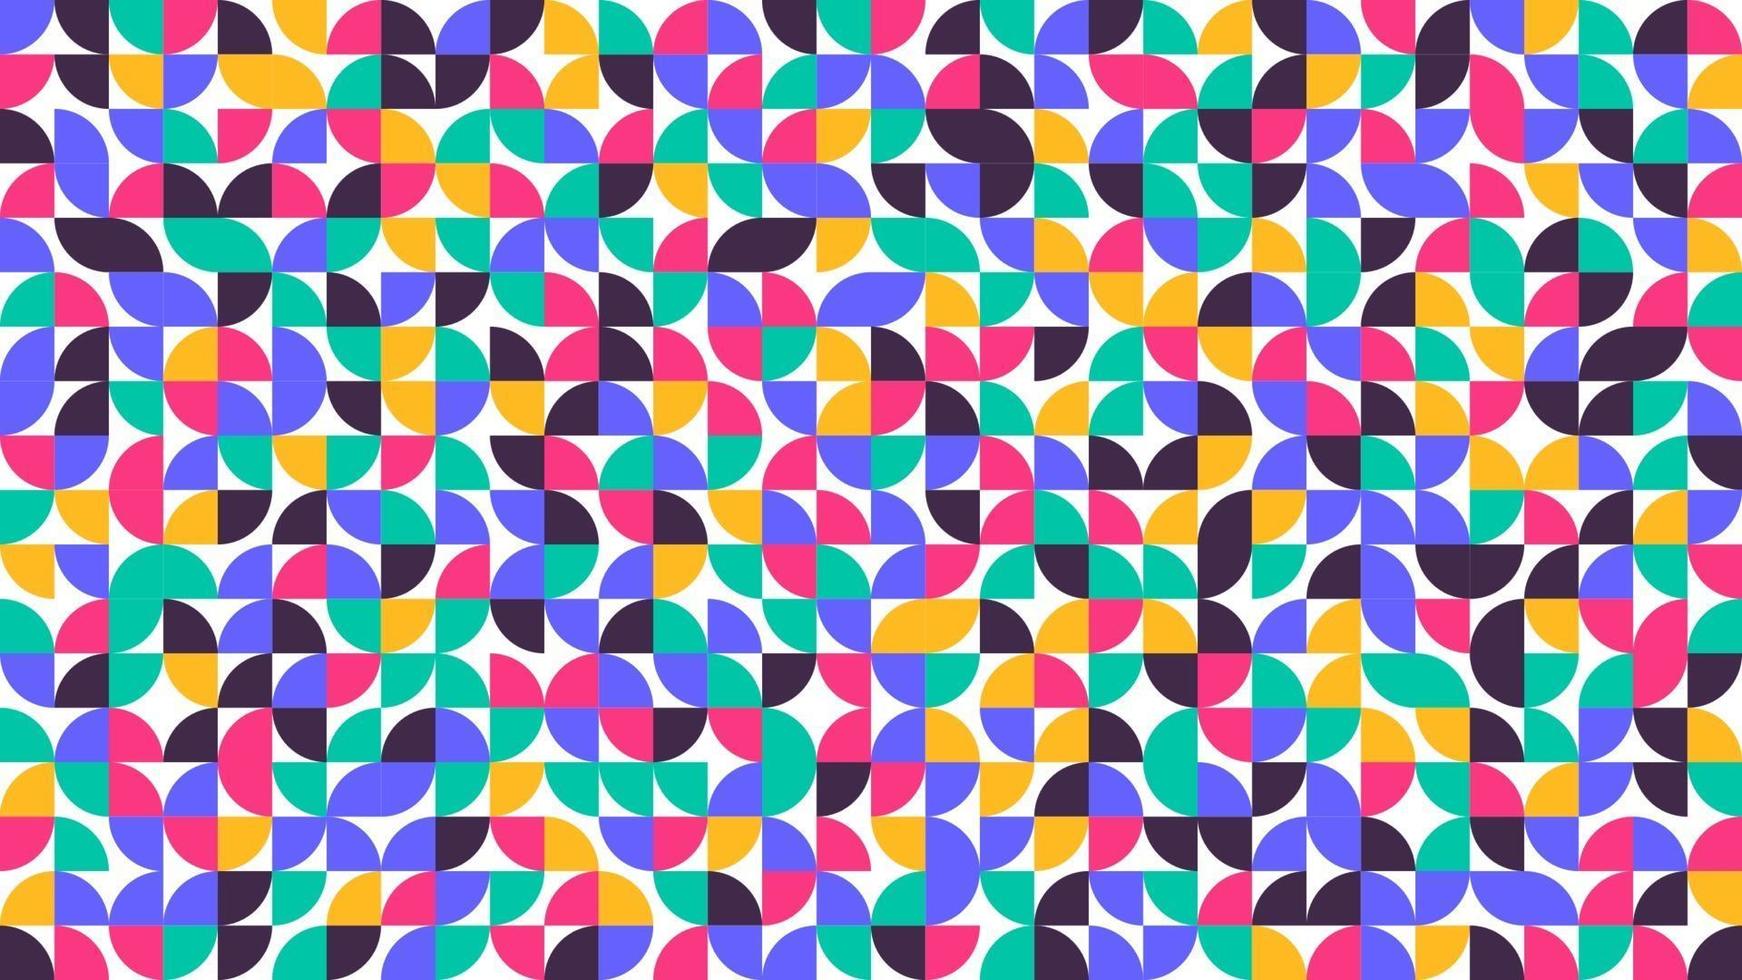 Geometric minimalist minimalist style art poster Abstract pattern design in scandinavian style vector